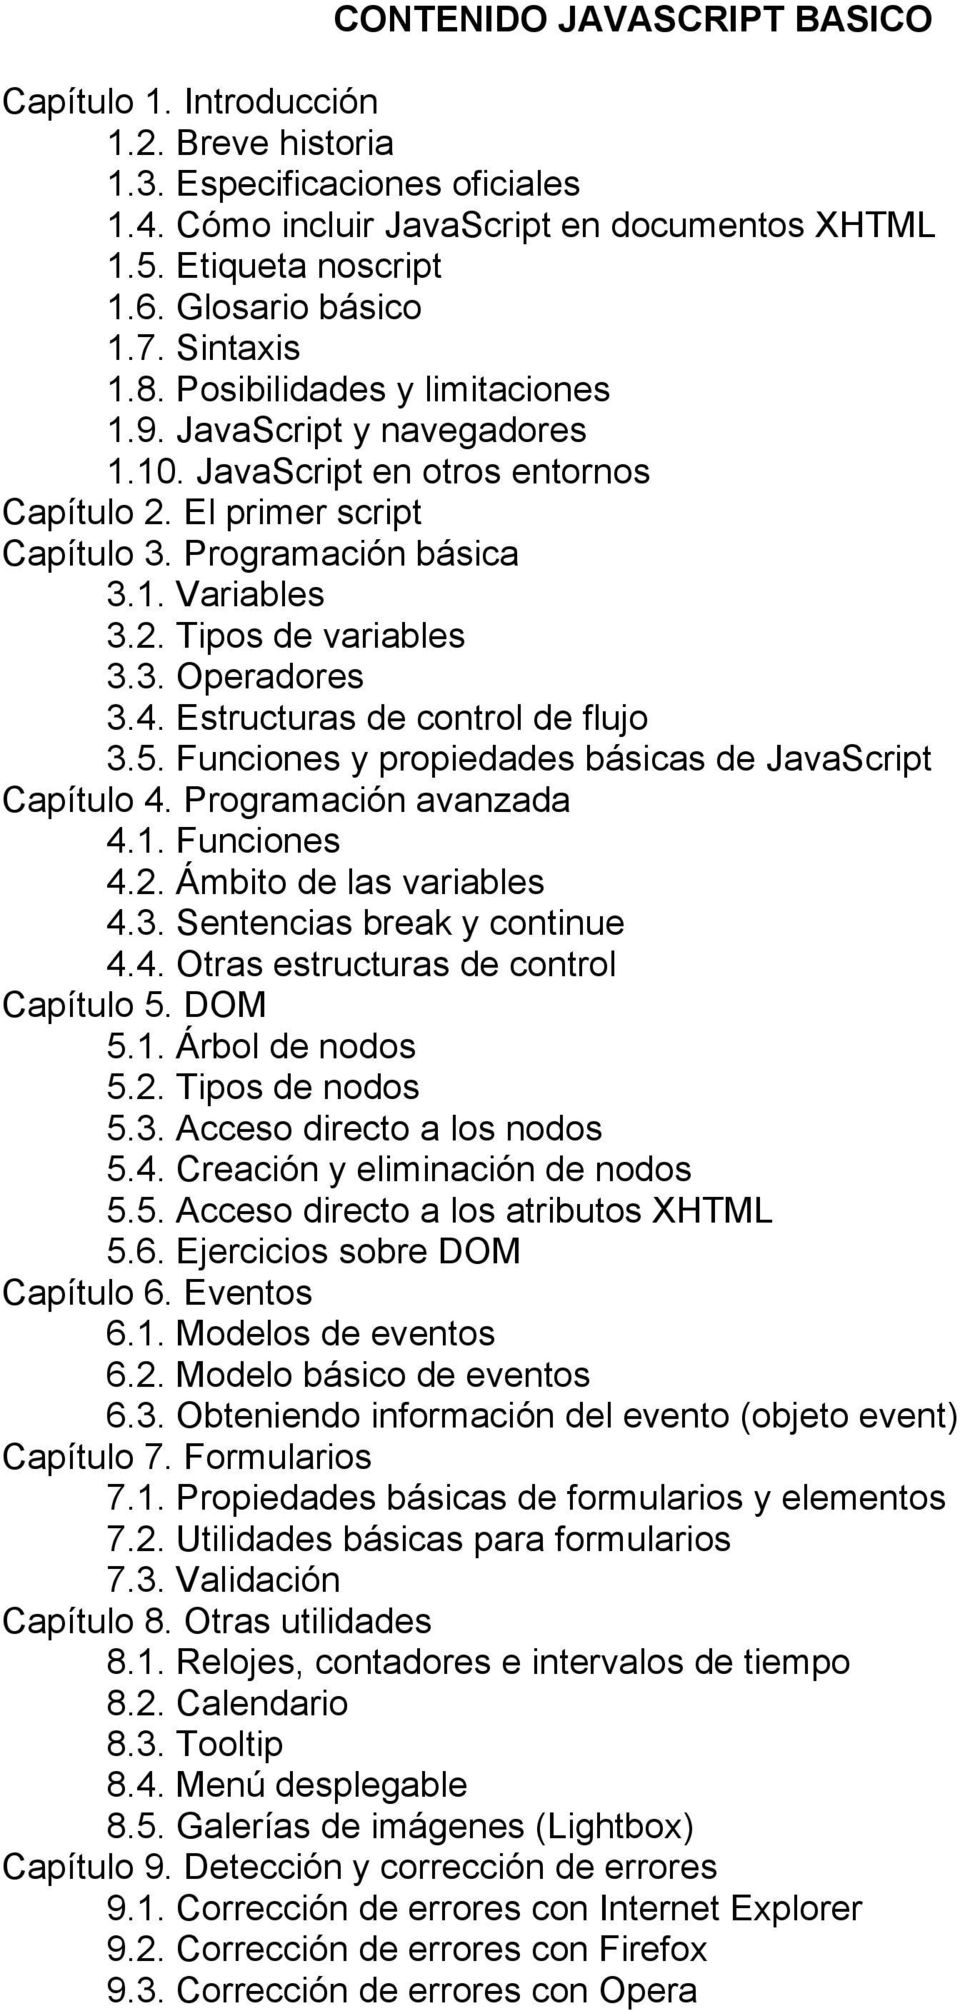 3. Operadores 3.4. Estructuras de control de flujo 3.5. Funciones y propiedades básicas de JavaScript Capítulo 4. Programación avanzada 4.1. Funciones 4.2. Ámbito de las variables 4.3. Sentencias break y continue 4.